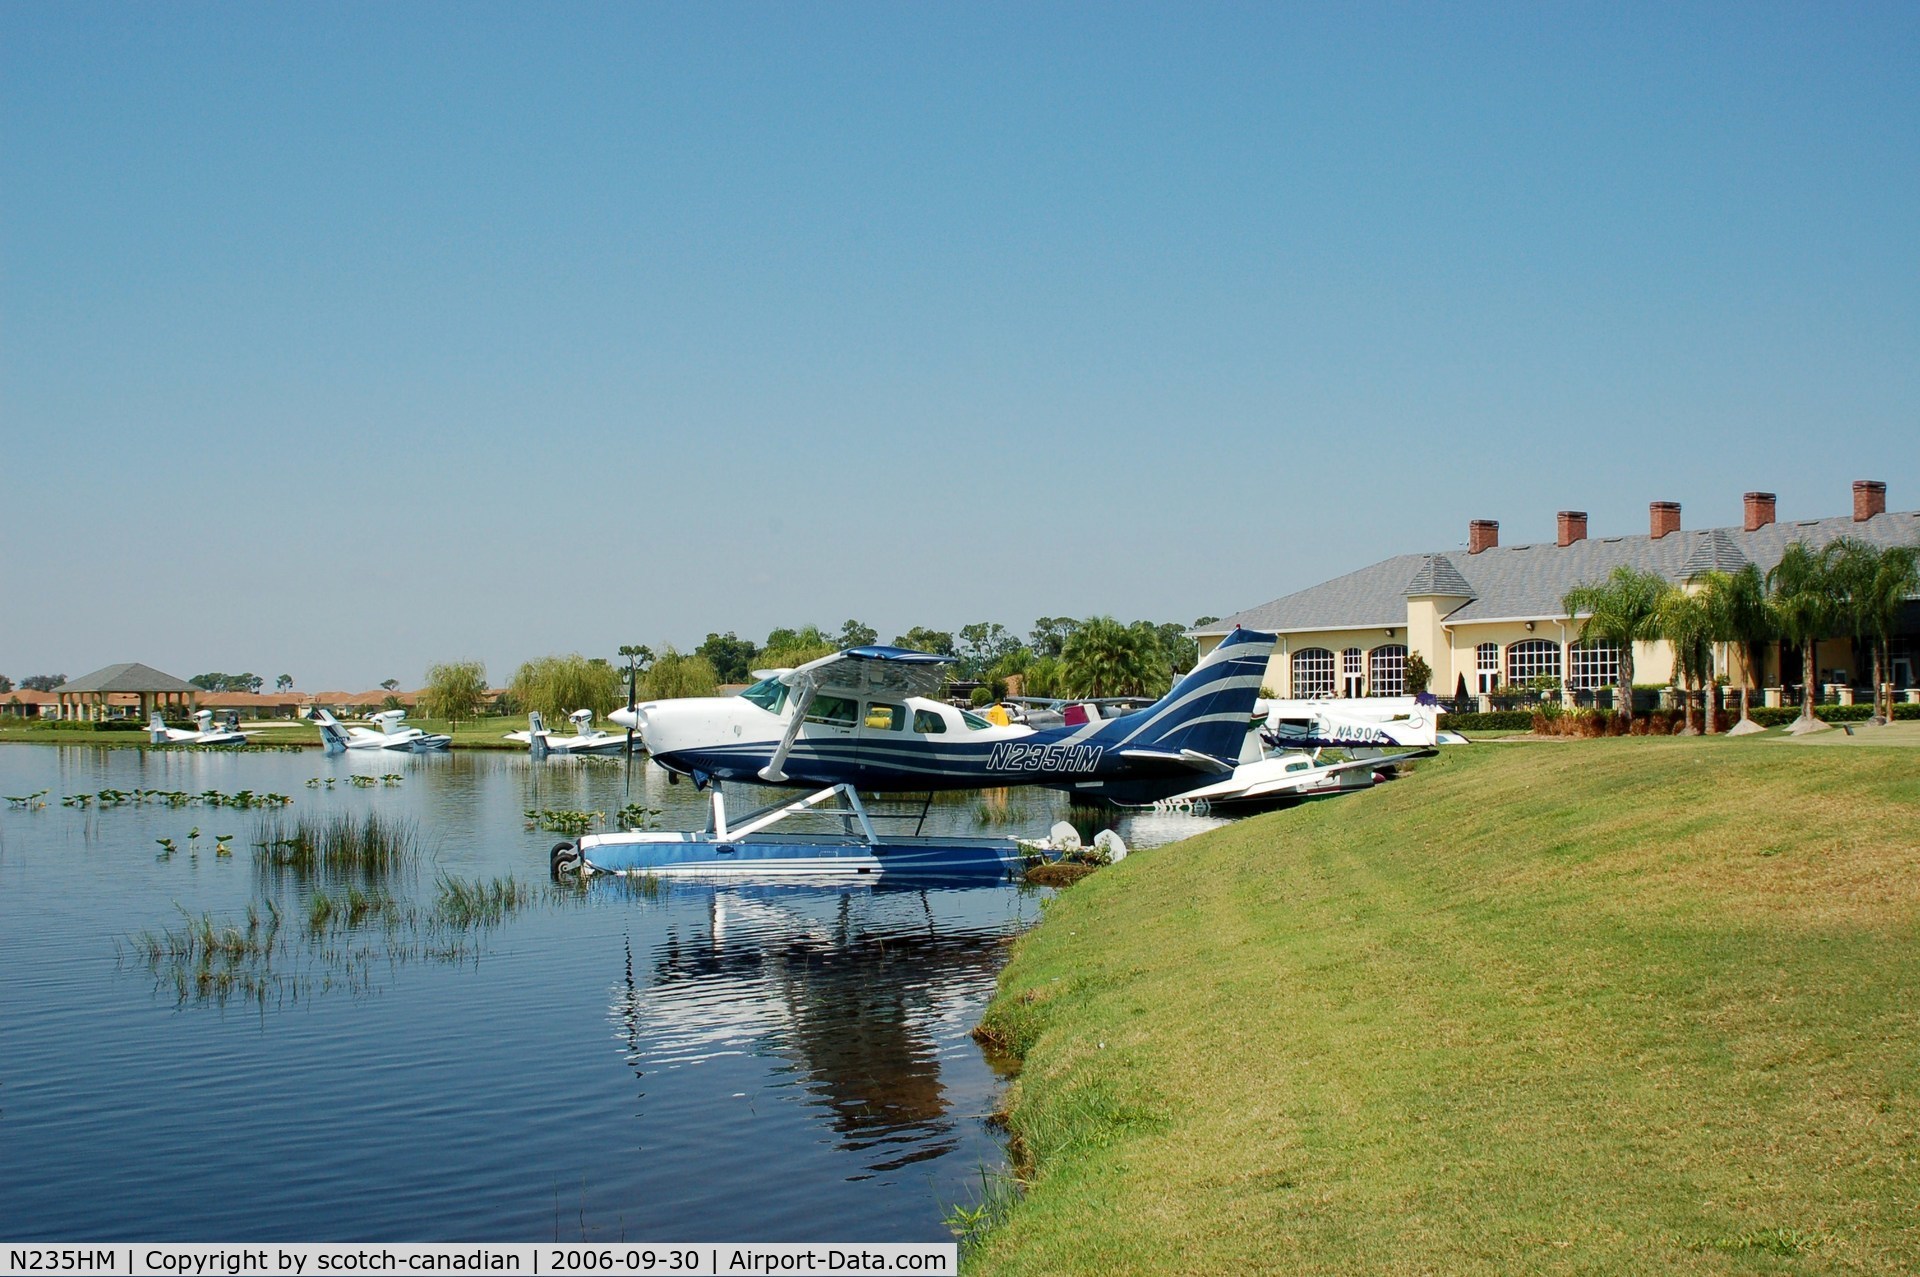 N235HM, 1984 Cessna TU206G Turbo Stationair C/N U20606795, 1984 Cessna TU206G N235HM at Lake Ashton Golf Club, Lake Wales, FL